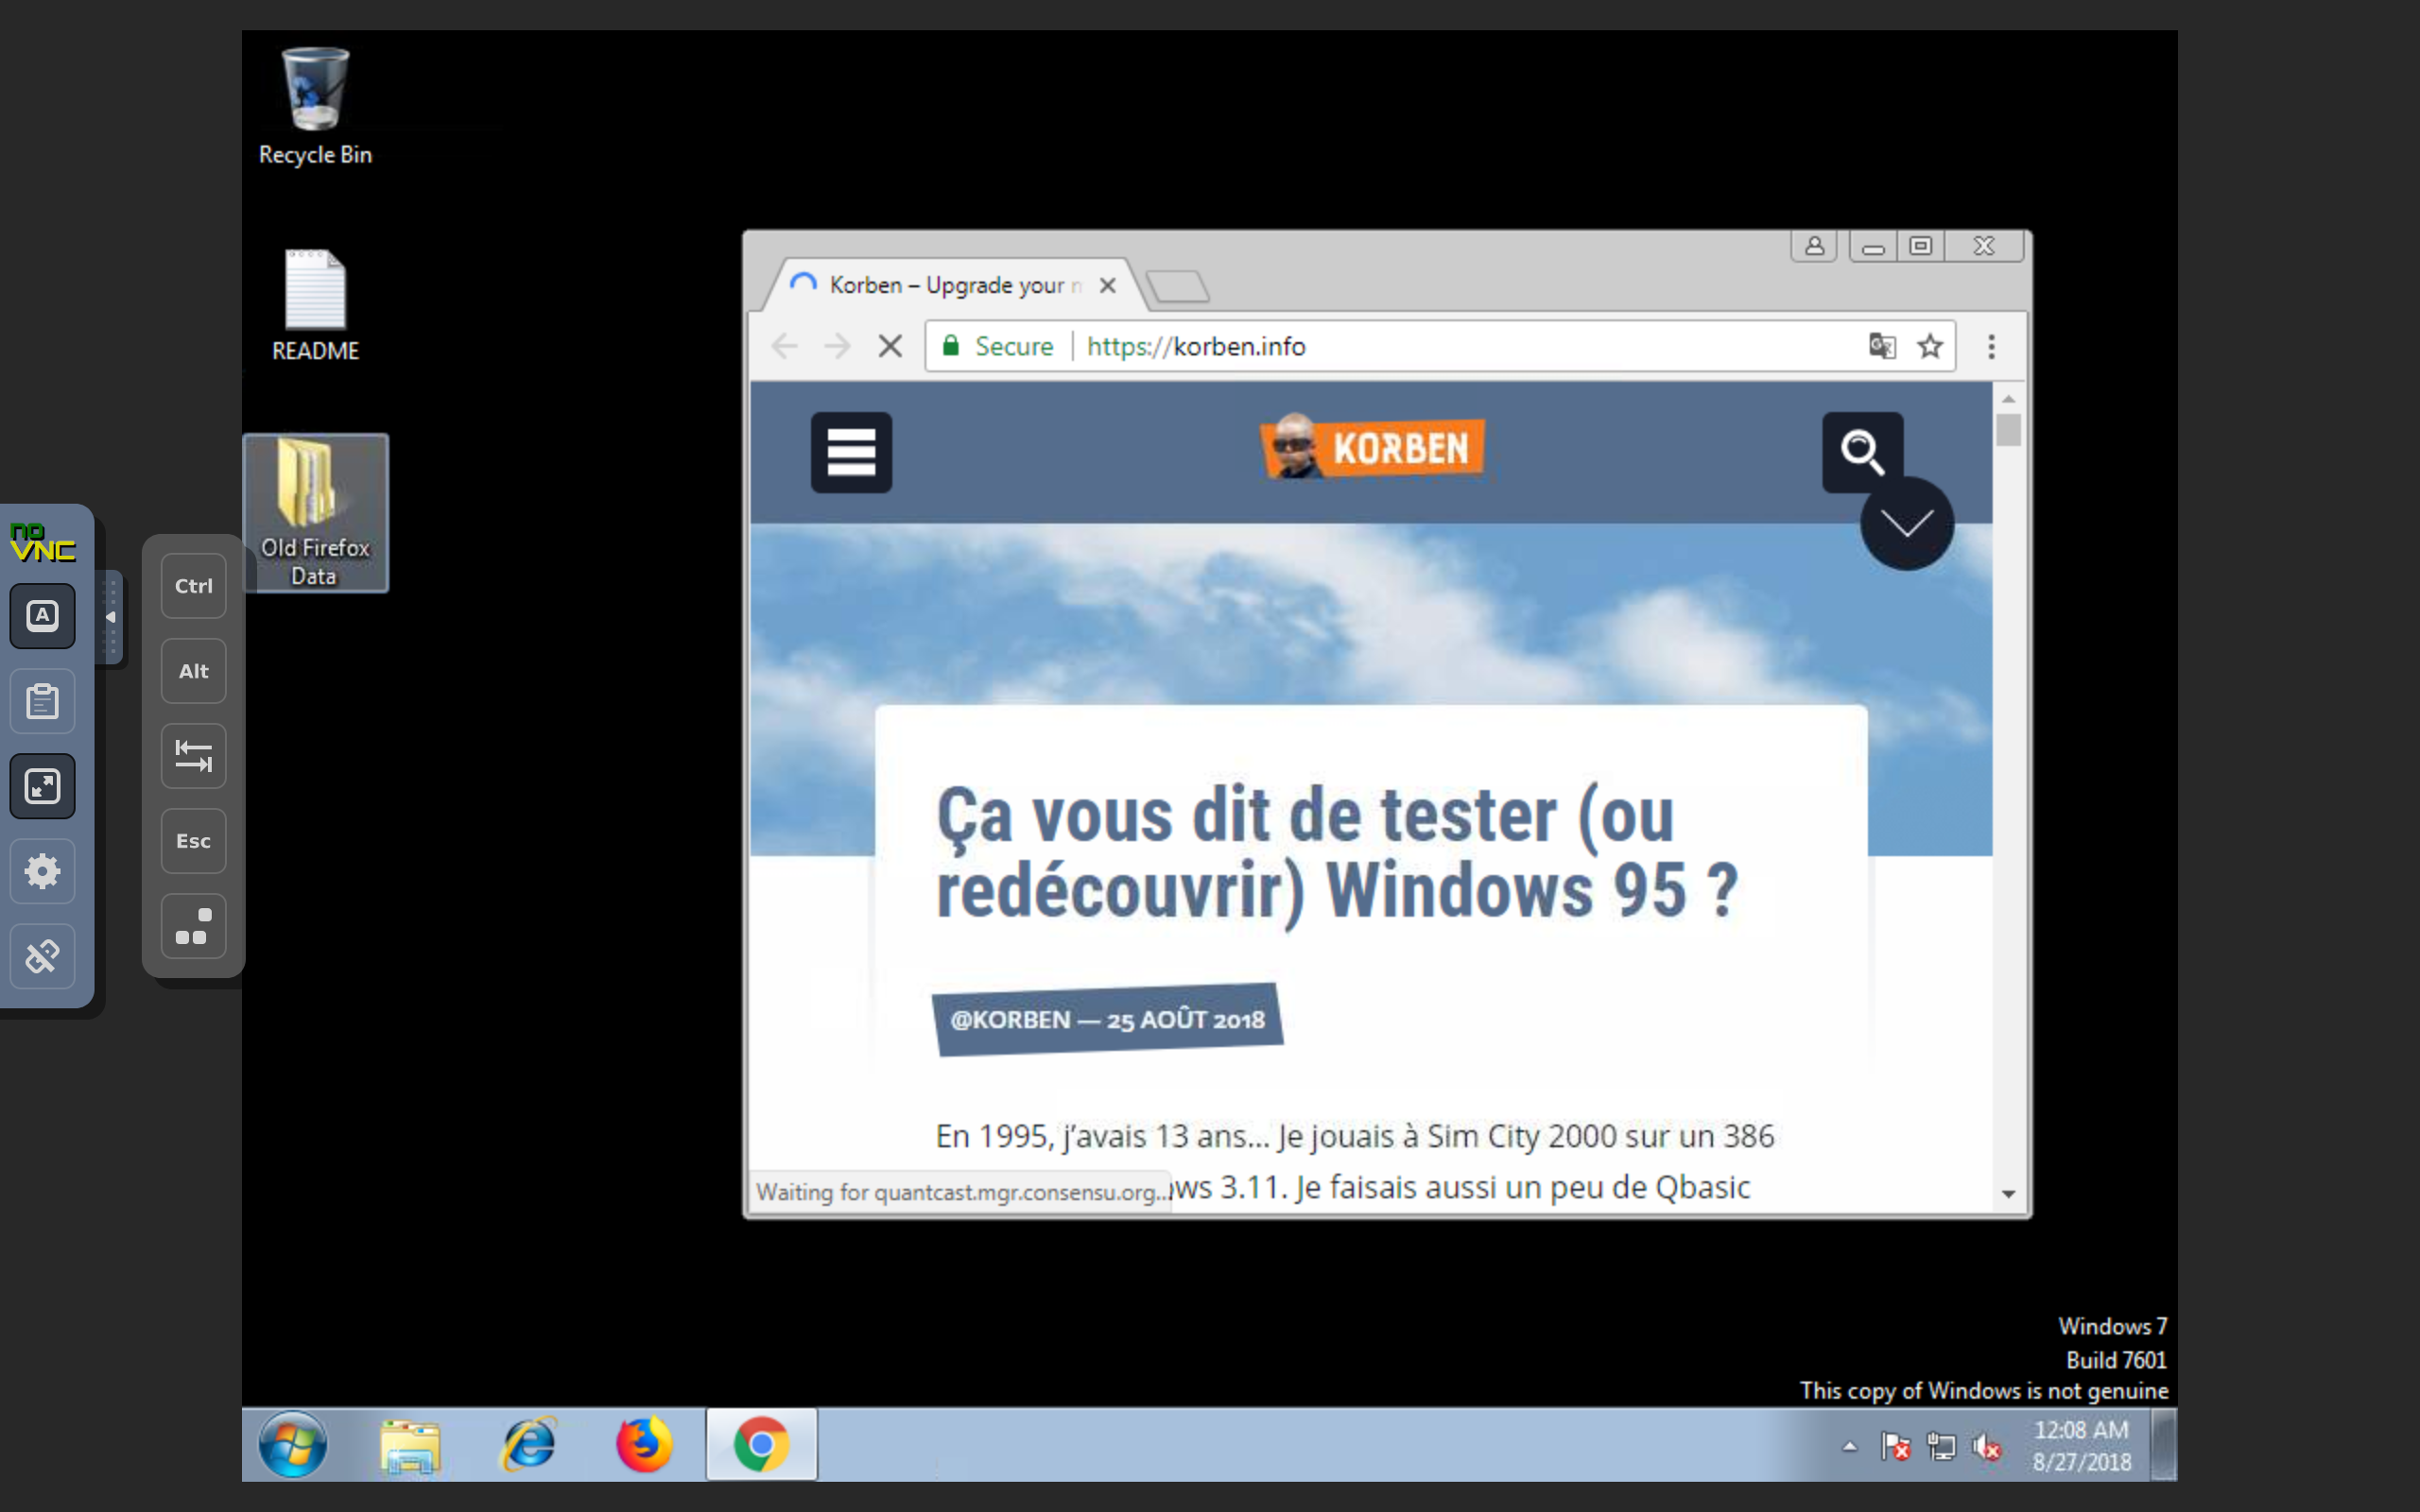 Capture d'écran de la page d'accueil de Tails, une distribution Linux axée sur la sécurité et la confidentialité